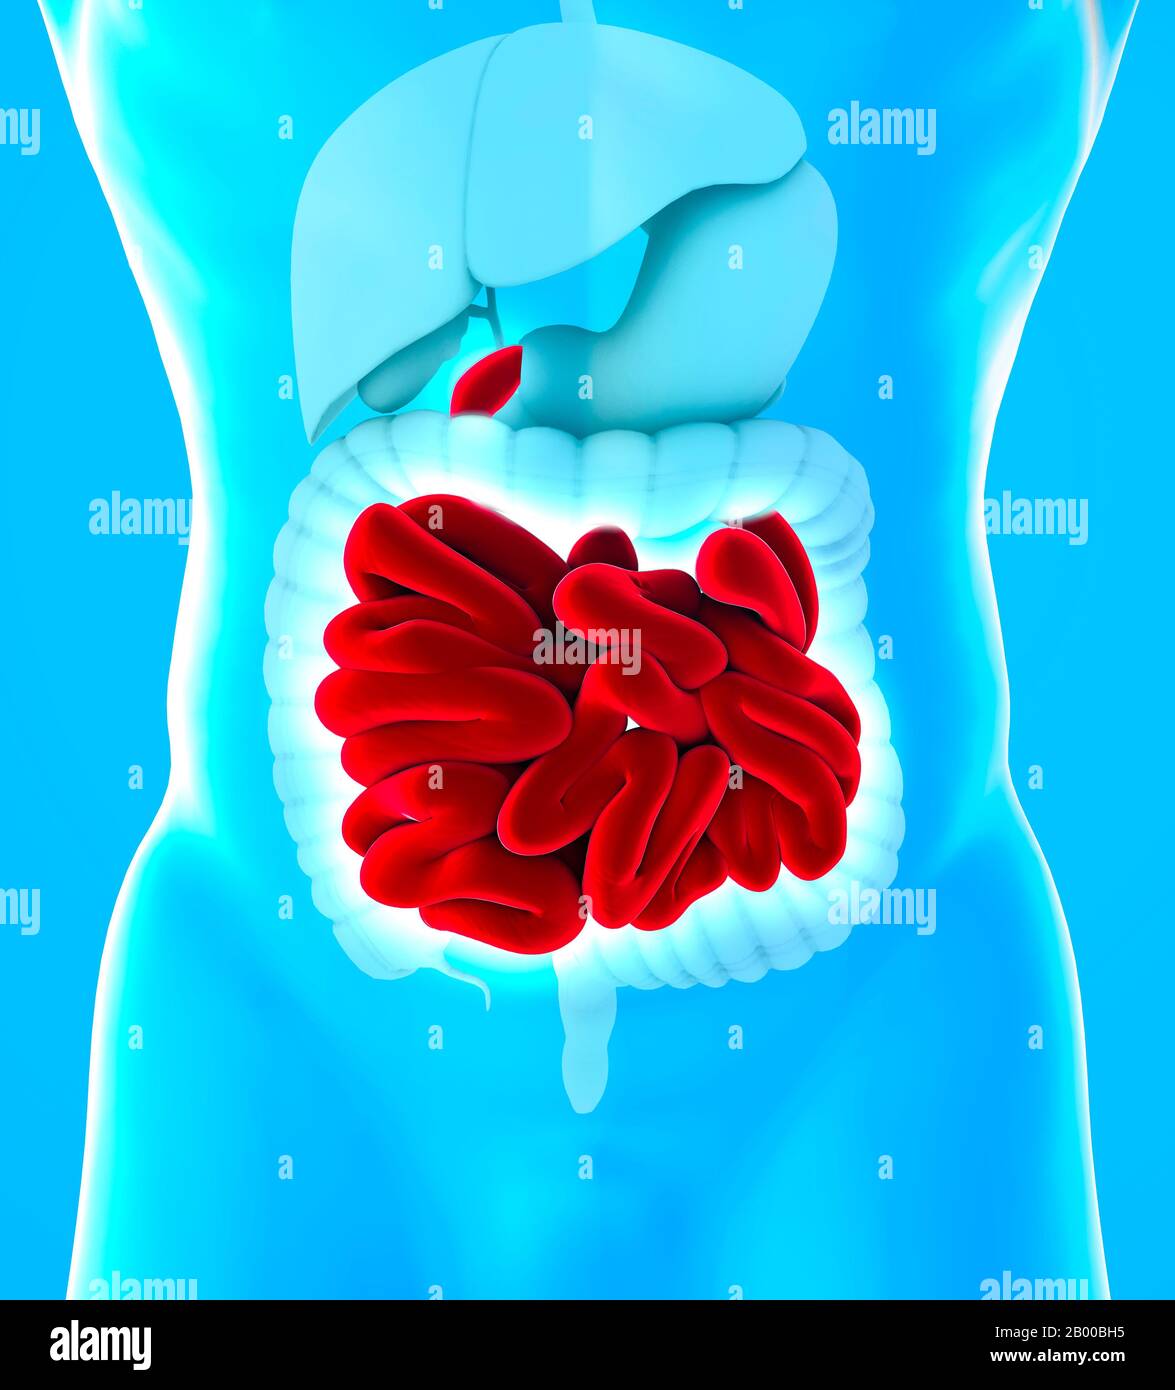 Menschliche Körperansicht des unteren Magen-Darm-Trakts und des Dünndarms. Der Dünndarm wird in das Zwölffingerdarm, das Jejunum und das Ileum unterteilt Stockfoto